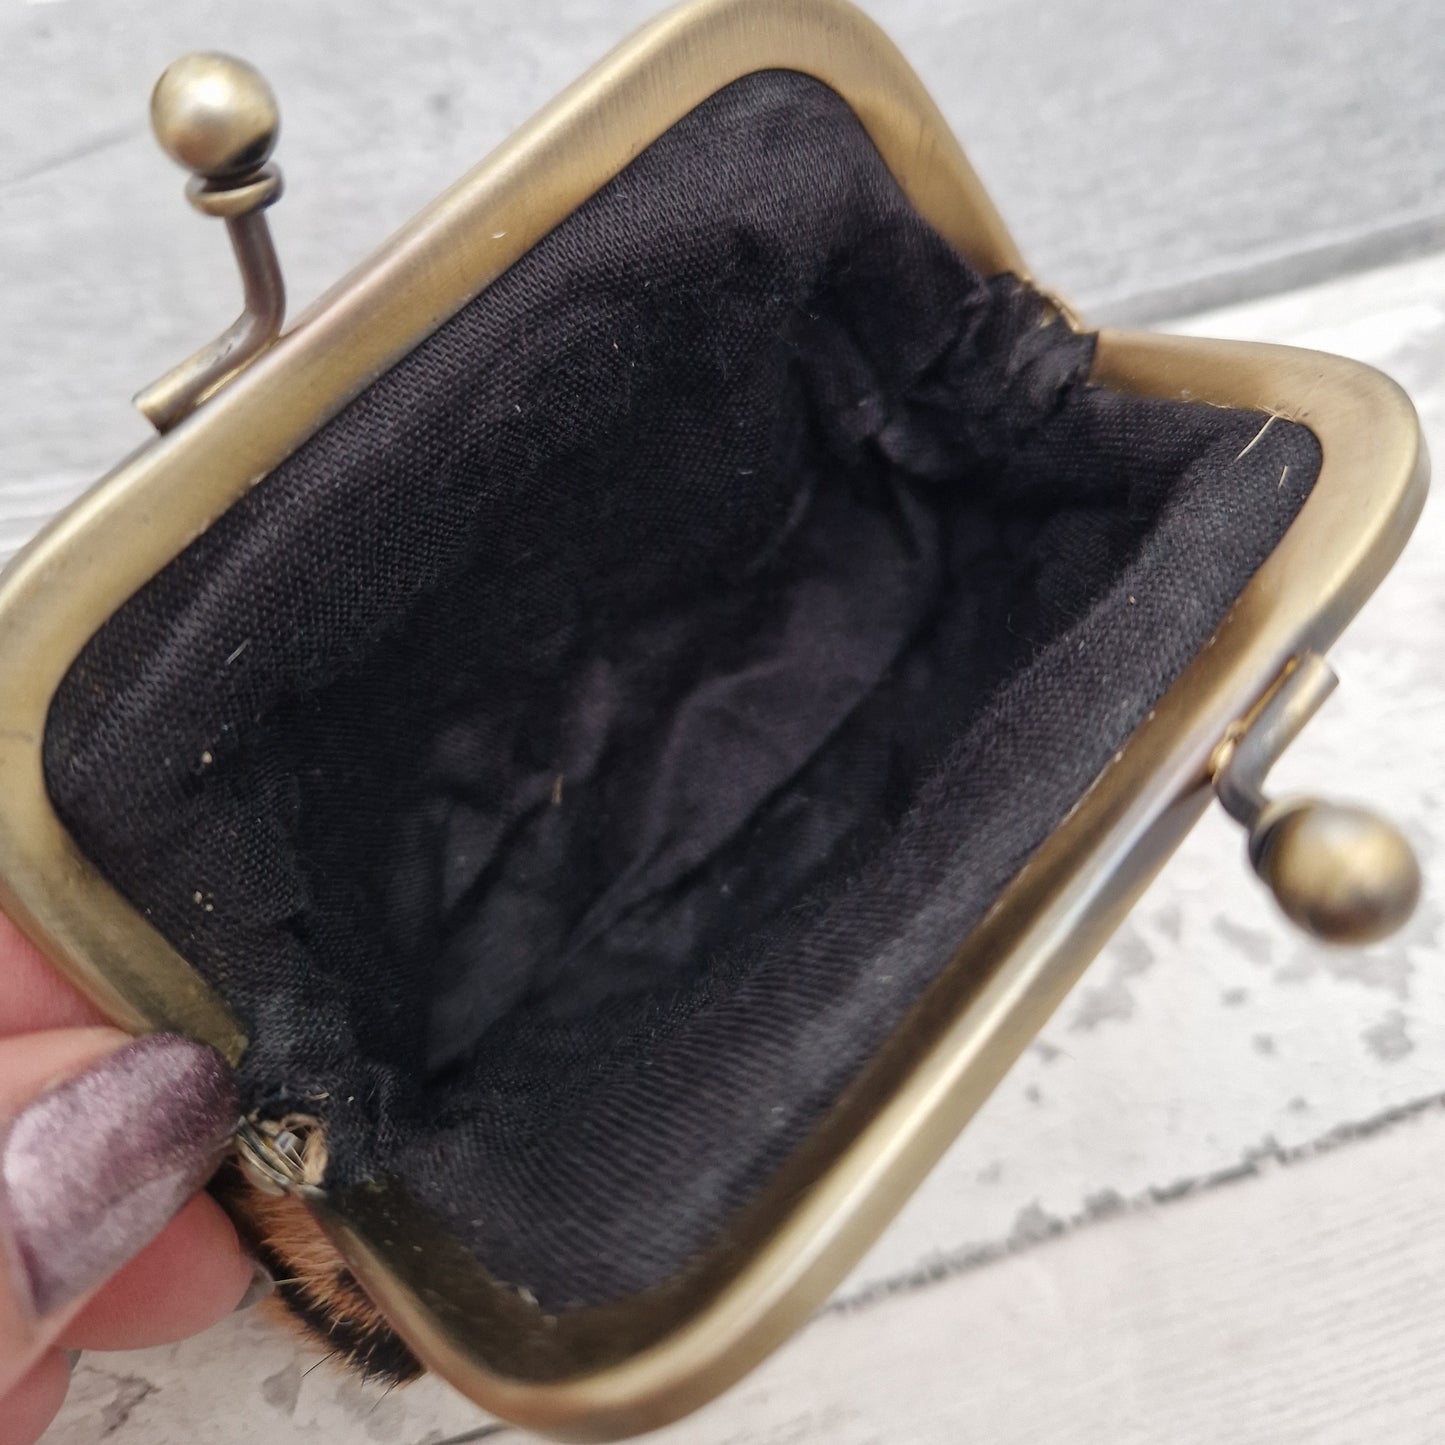 Plain black interior of a coin purse